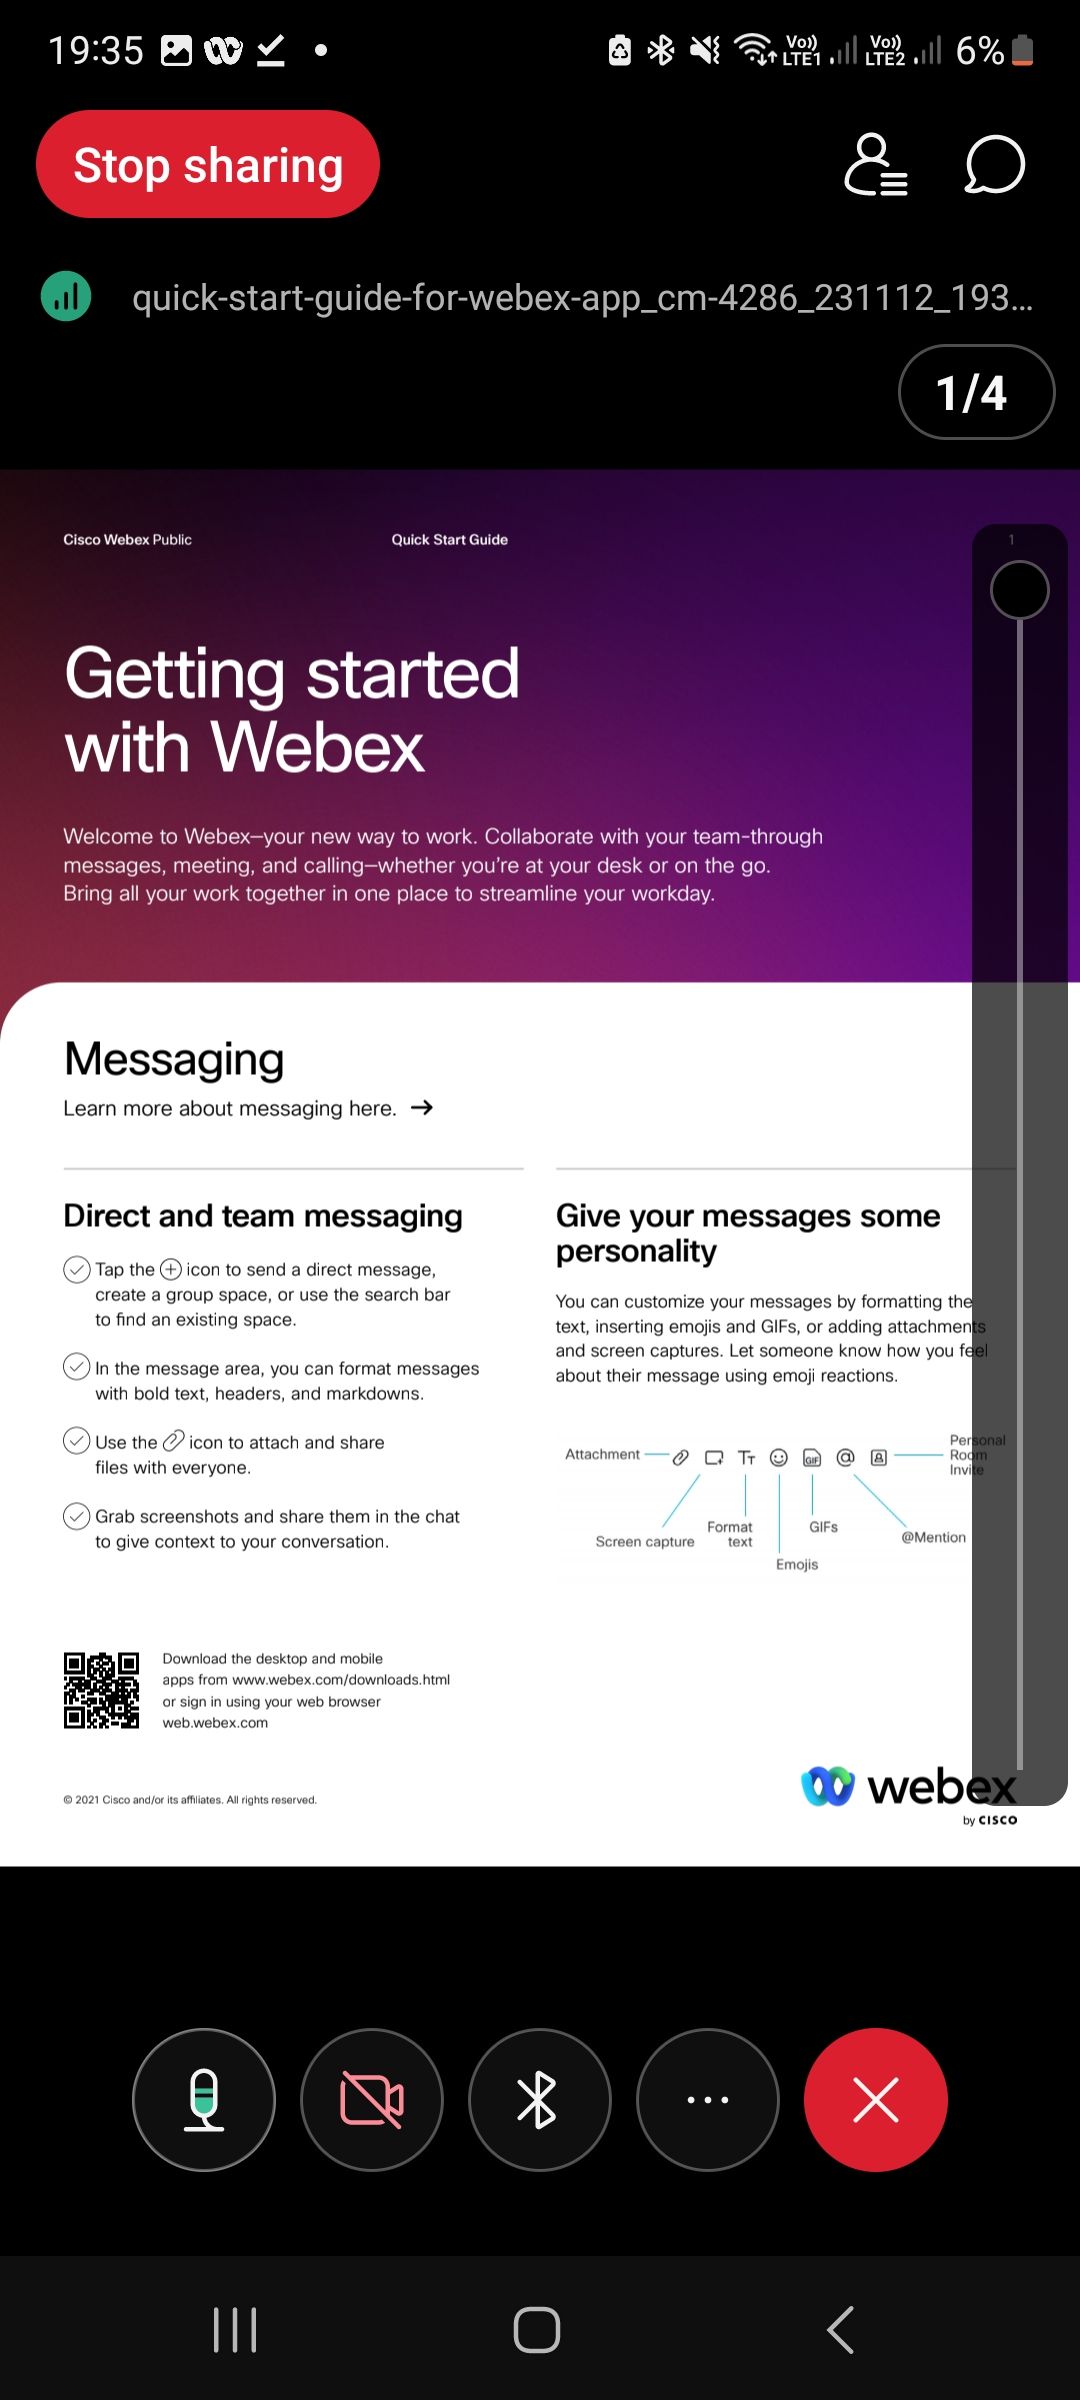 Captura de tela da visualização do arquivo de compartilhamento do aplicativo móvel Webex